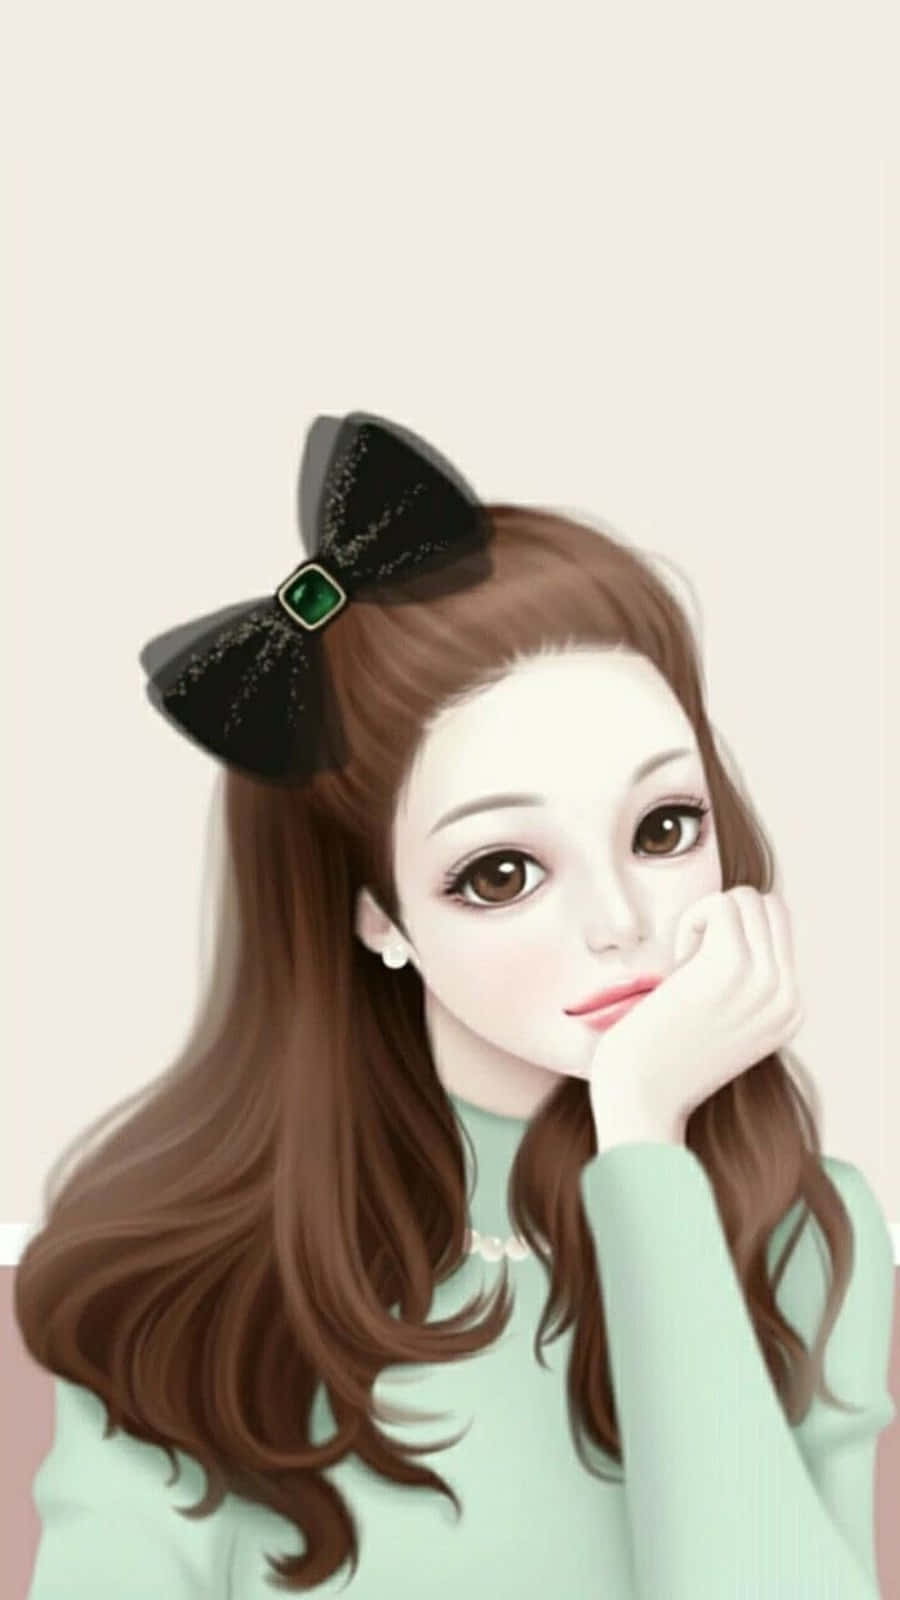 Korean Anime Girl Green Sweater Background